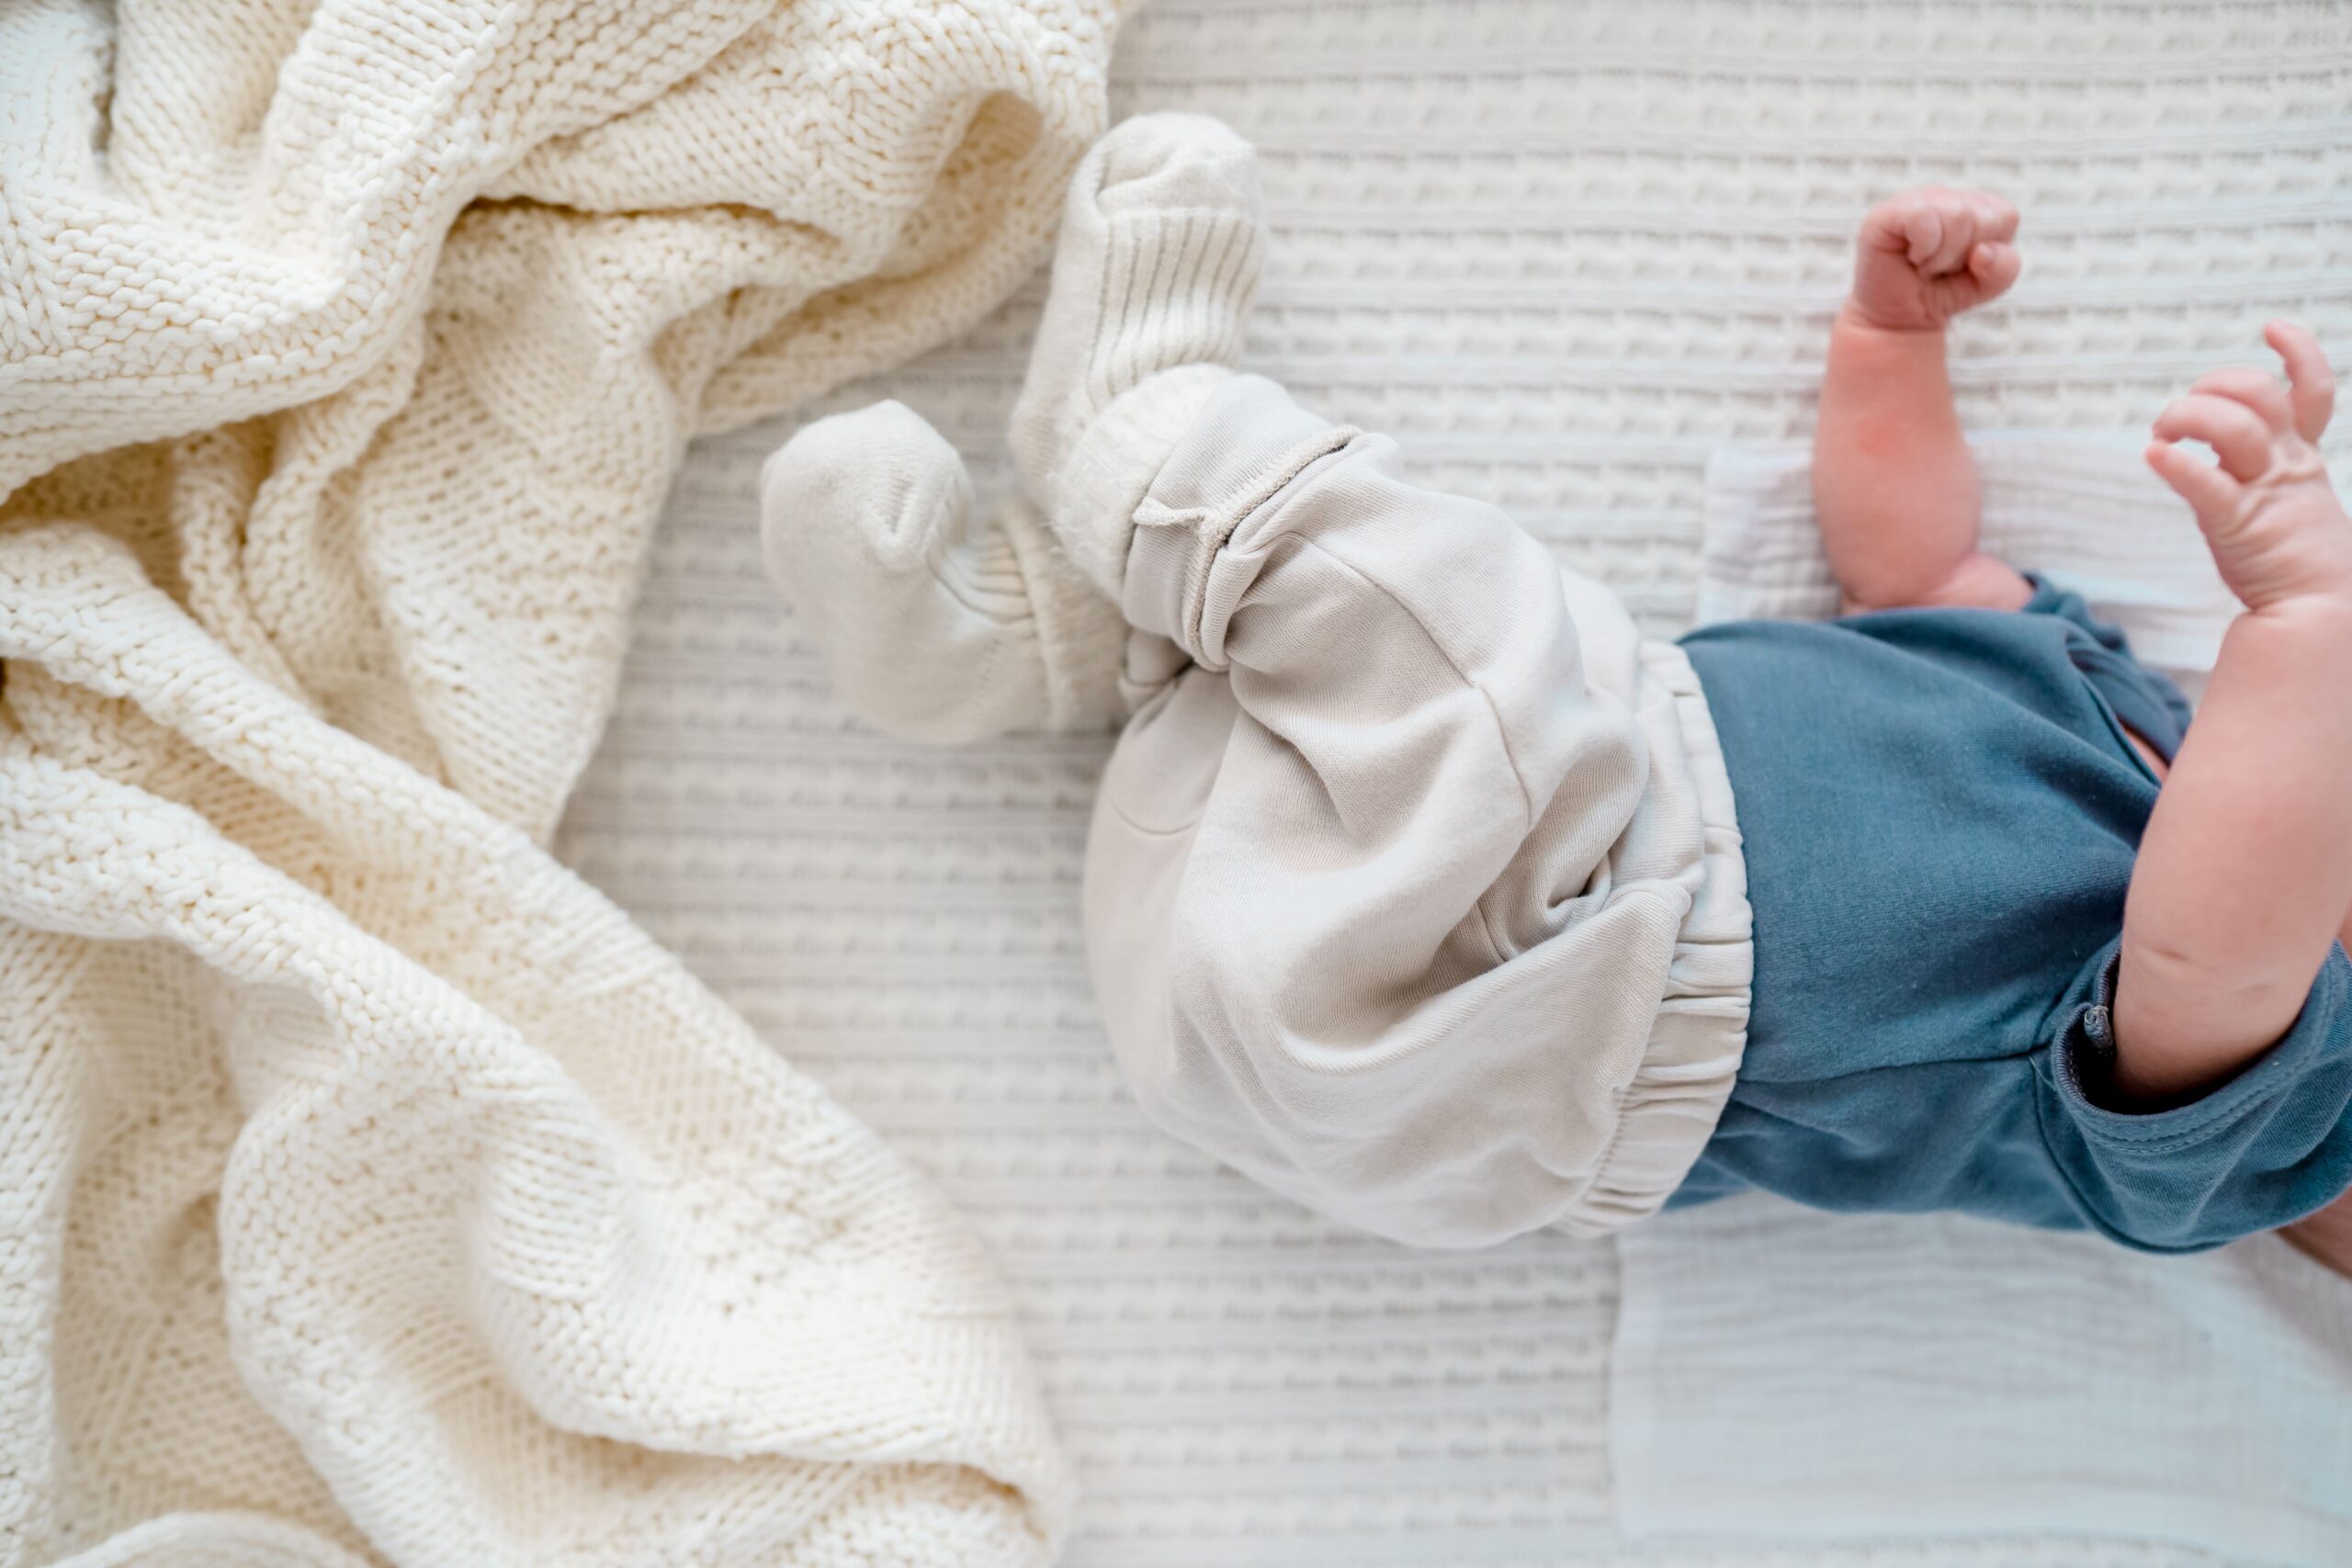 Que detergente utilizar para lavar ropa del bebé antes de nacer?